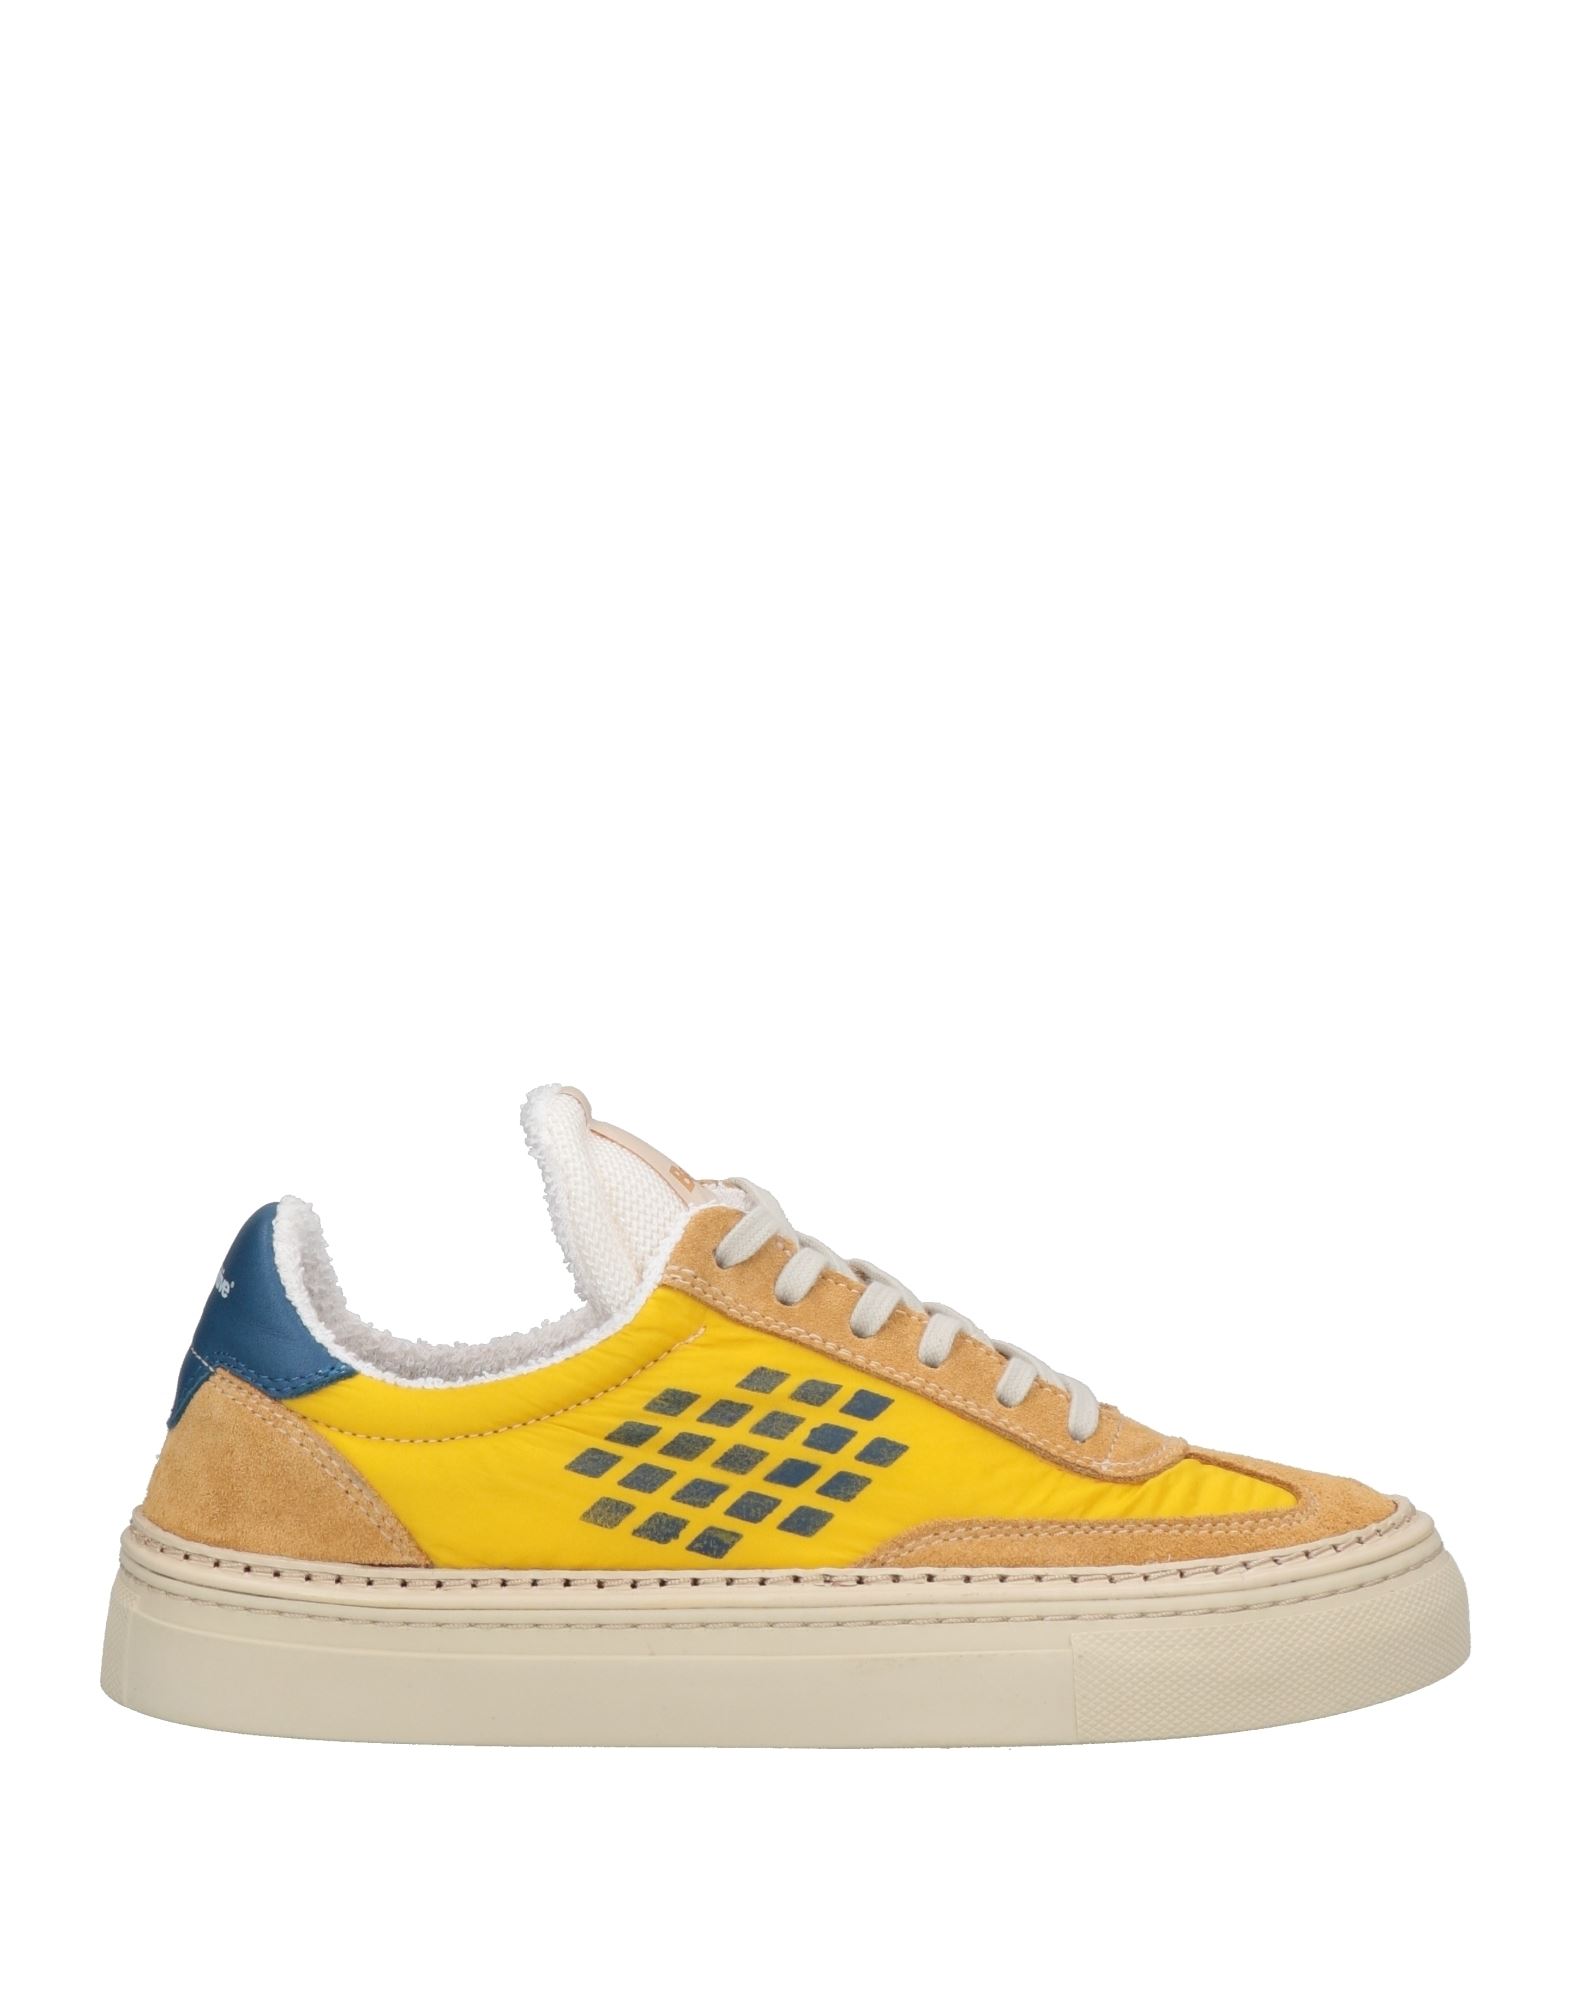 Bepositive Sneakers In Yellow